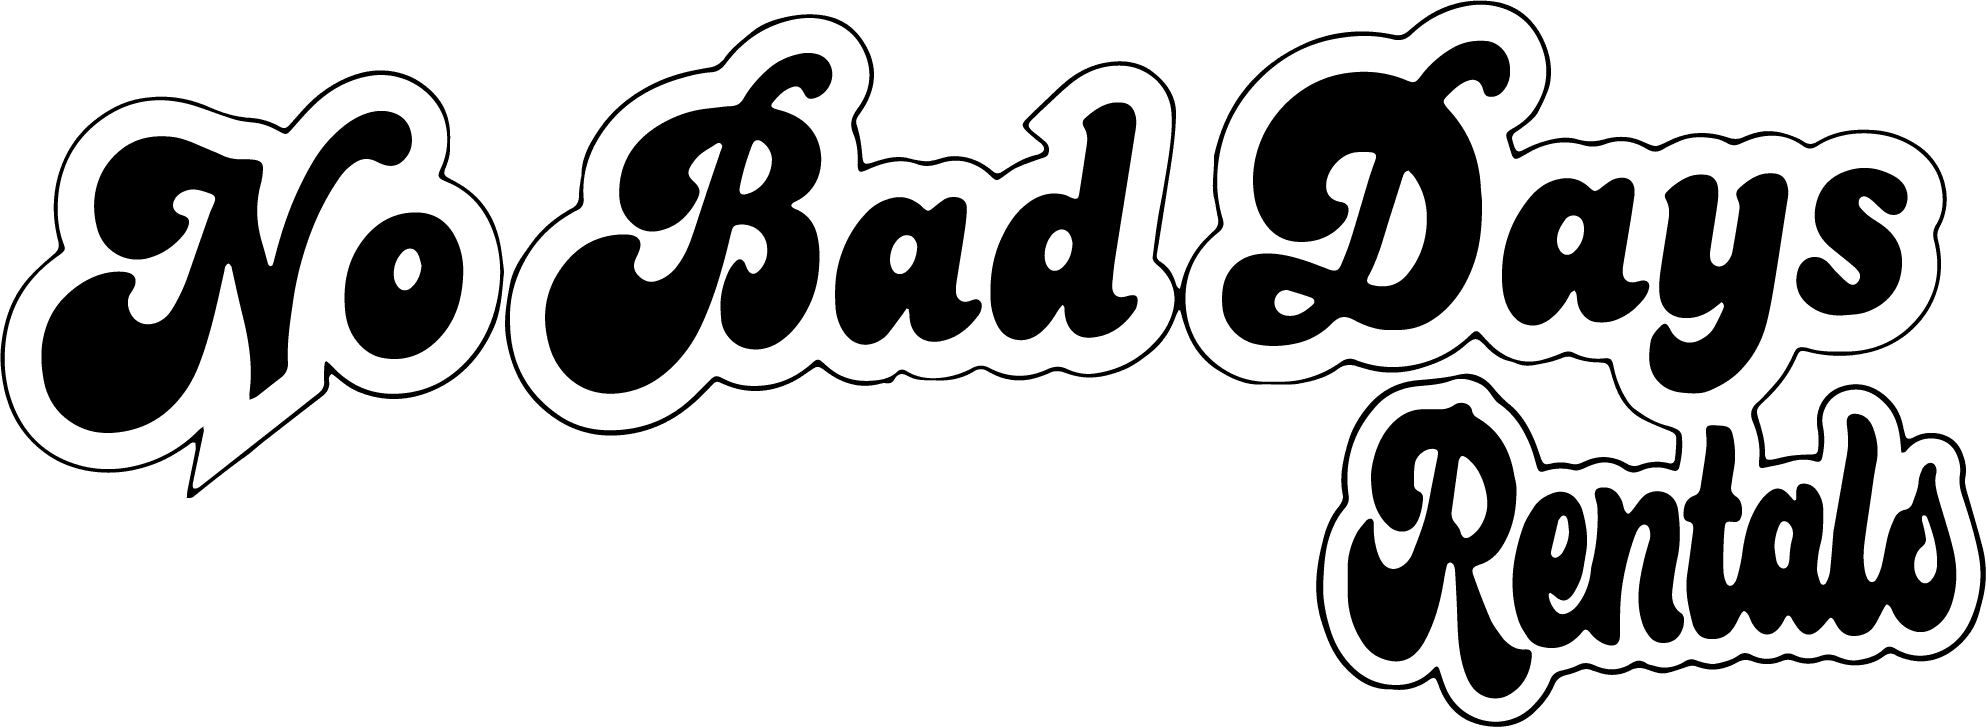 No Bad Days Rentals Logo Text